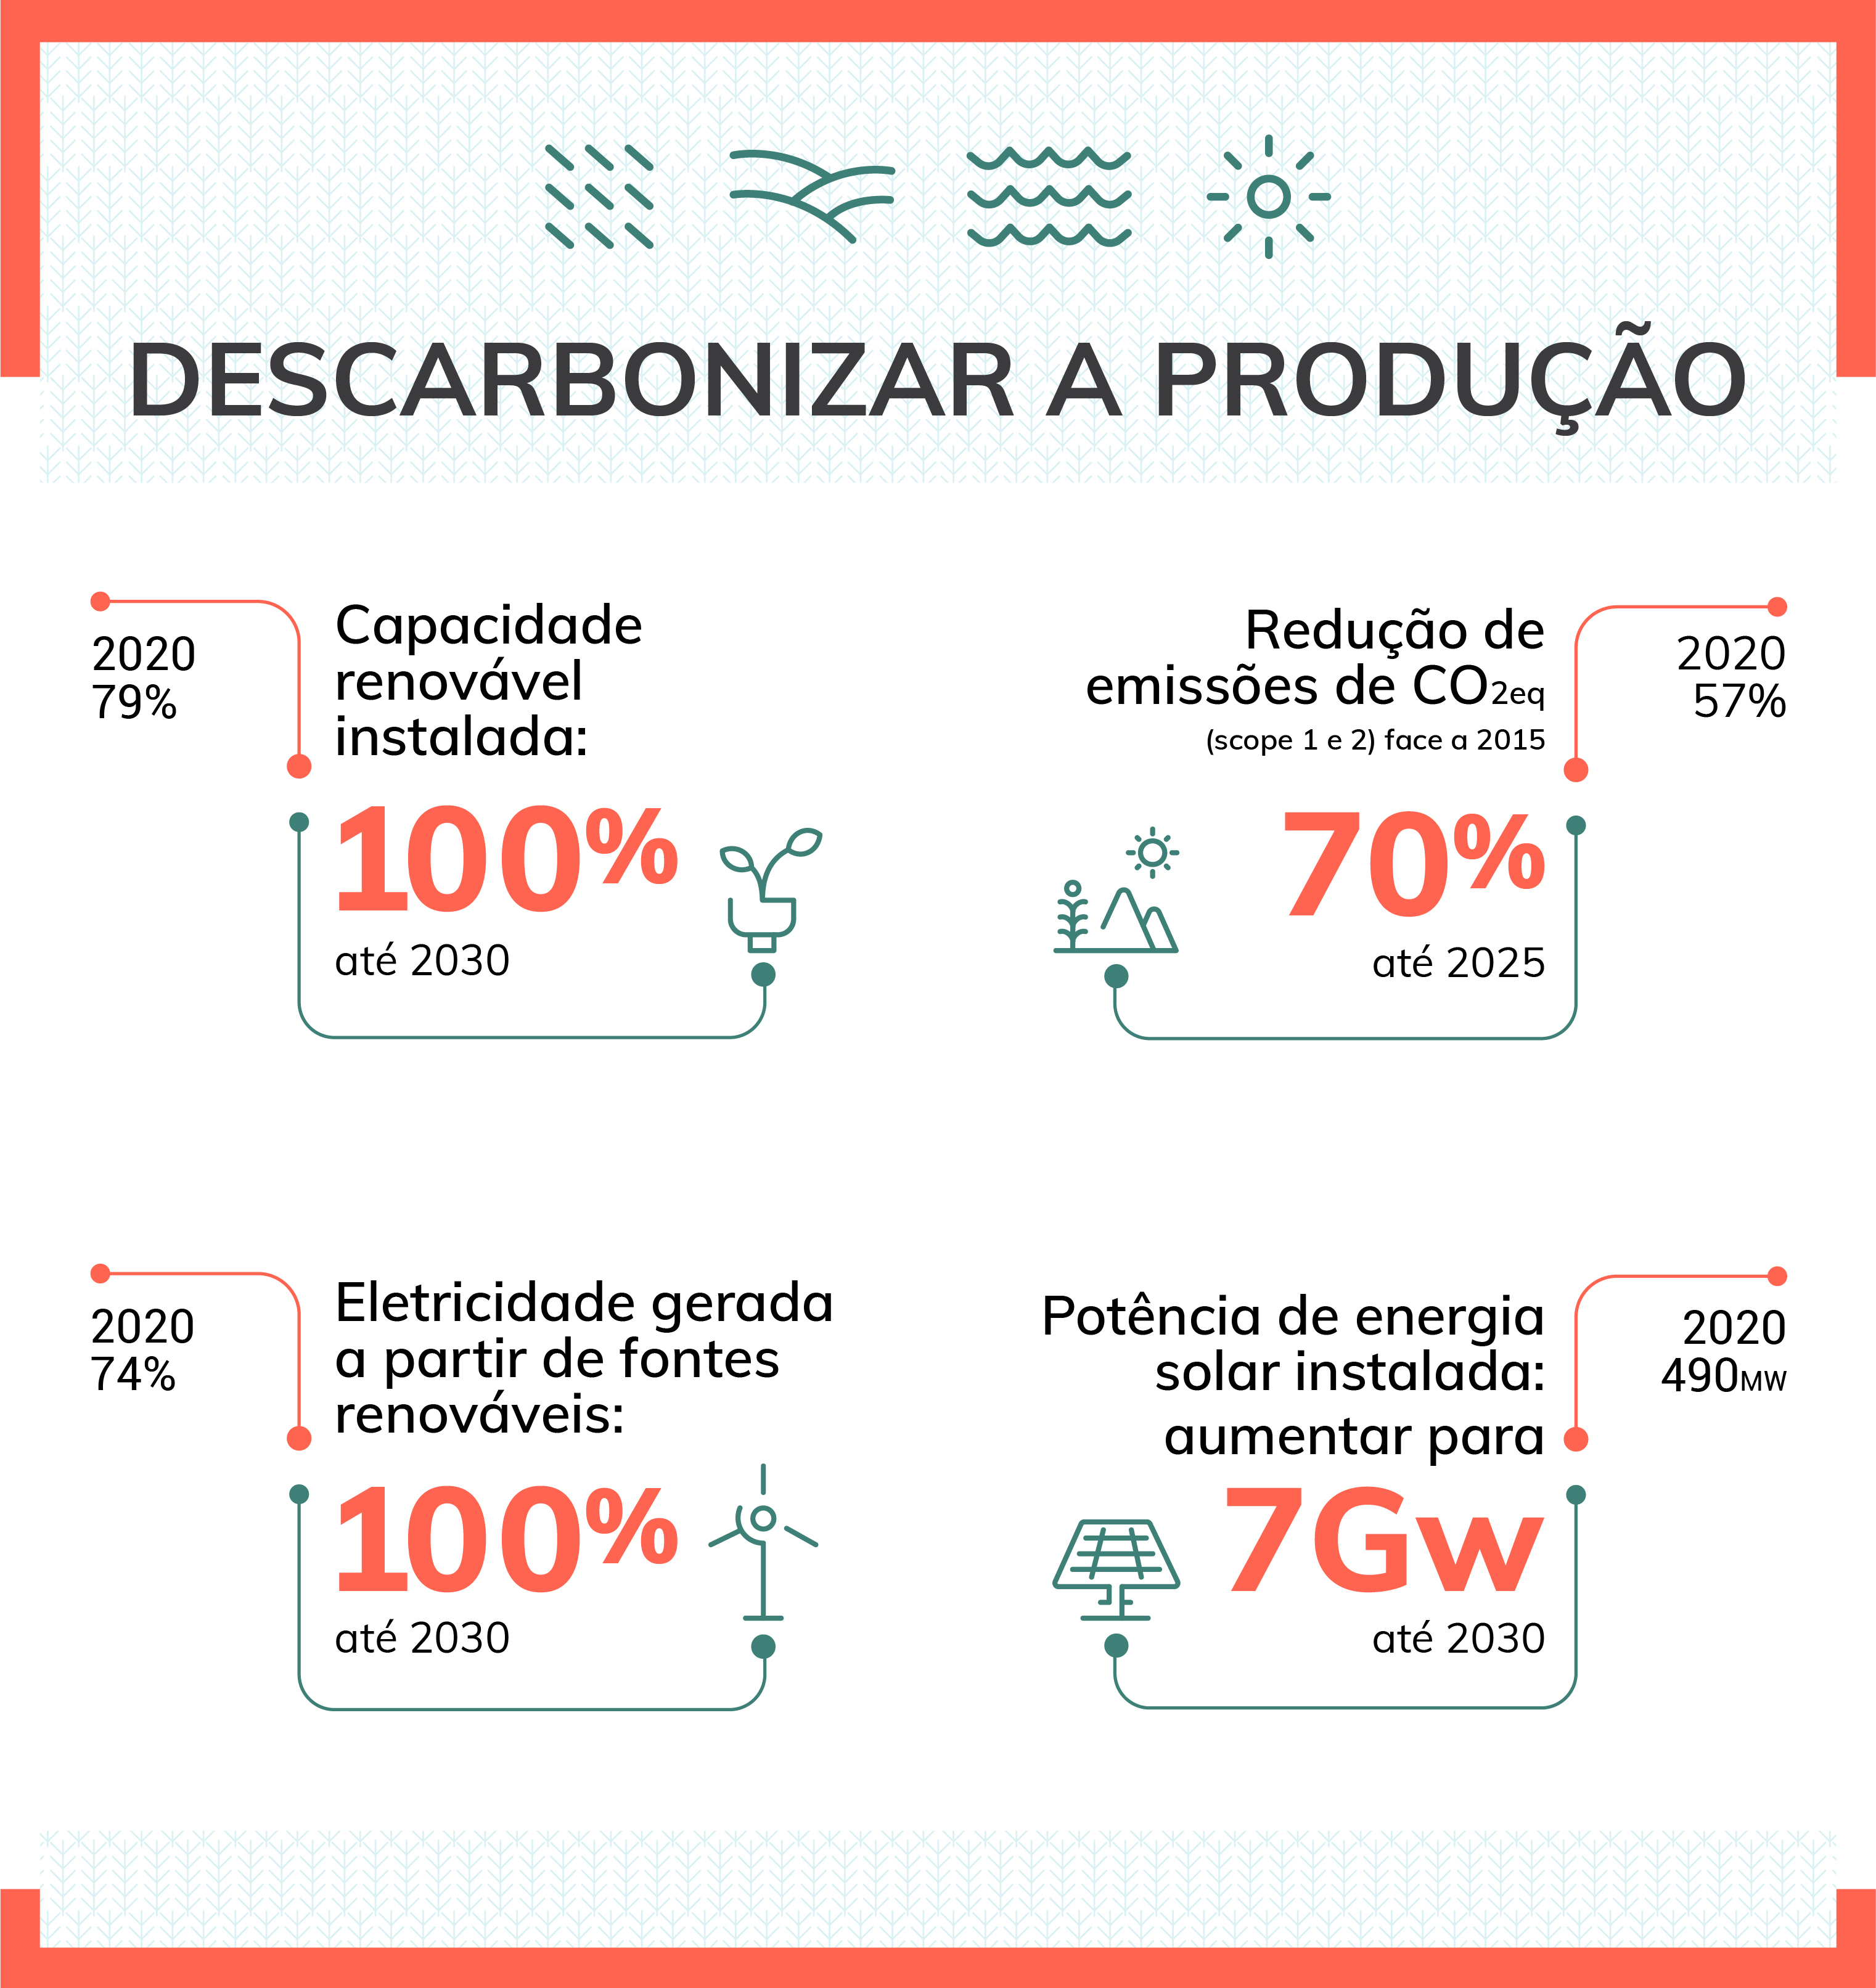 Descarbonizar a produção